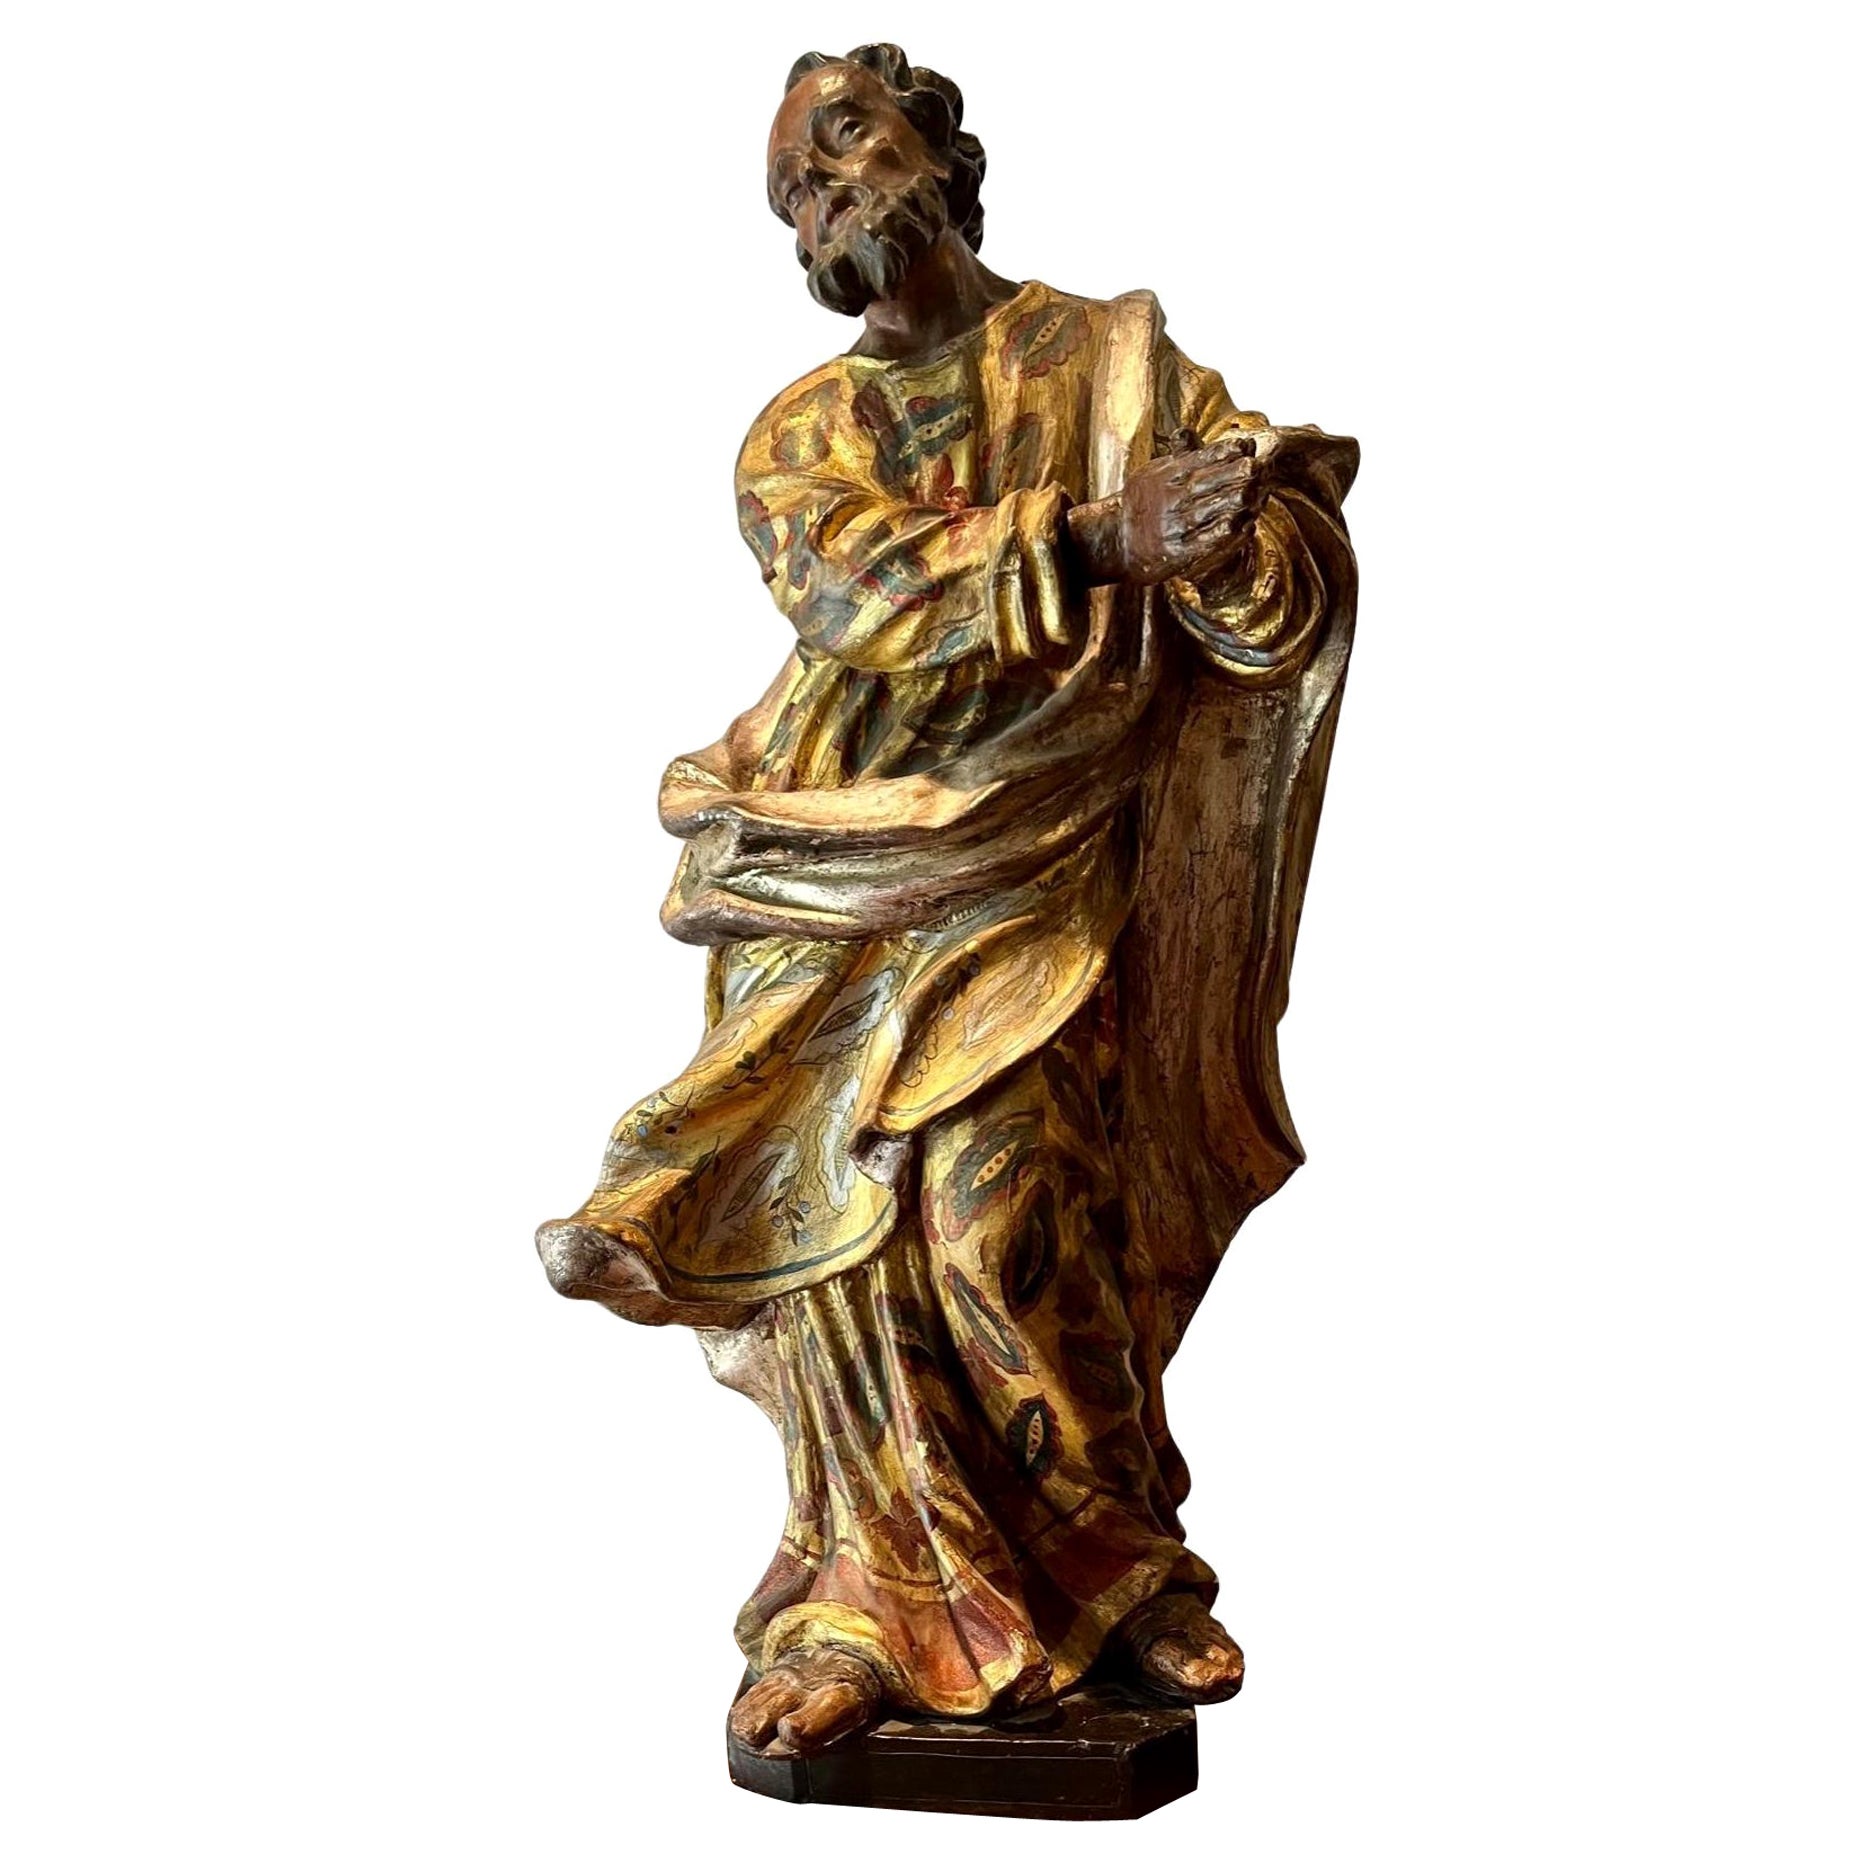 Polychrome geschnitzte Holz-Silber-Vergoldete Holzfigur des Heiligen Johannes aus dem 17. Jahrhundert.